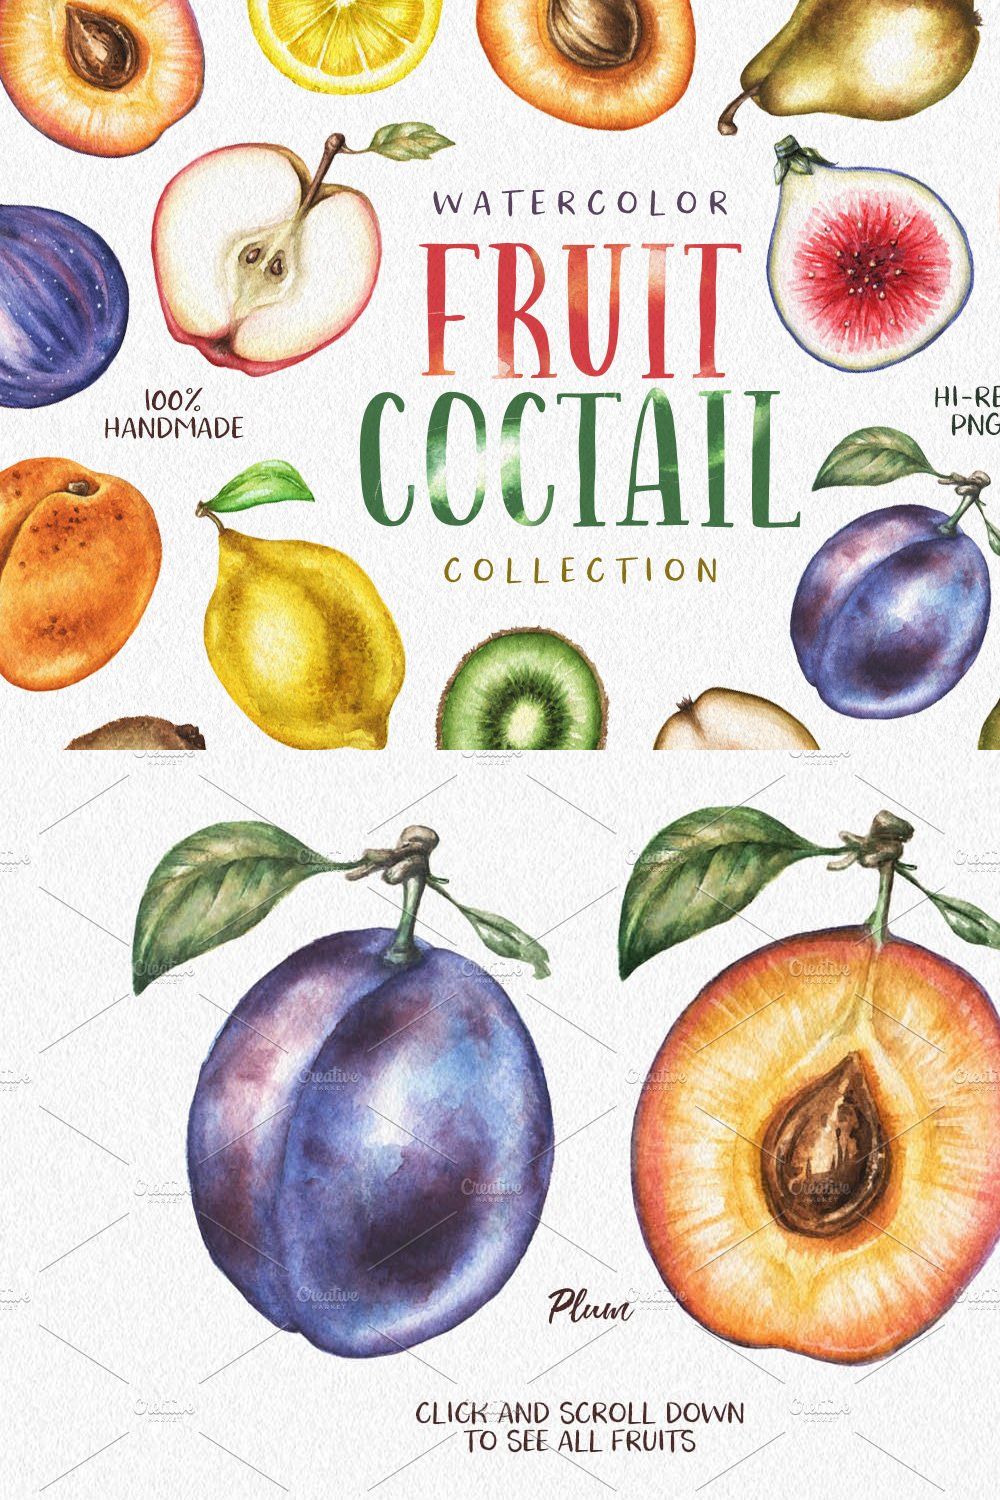 Watercolor Fruit Coctail pinterest preview image.